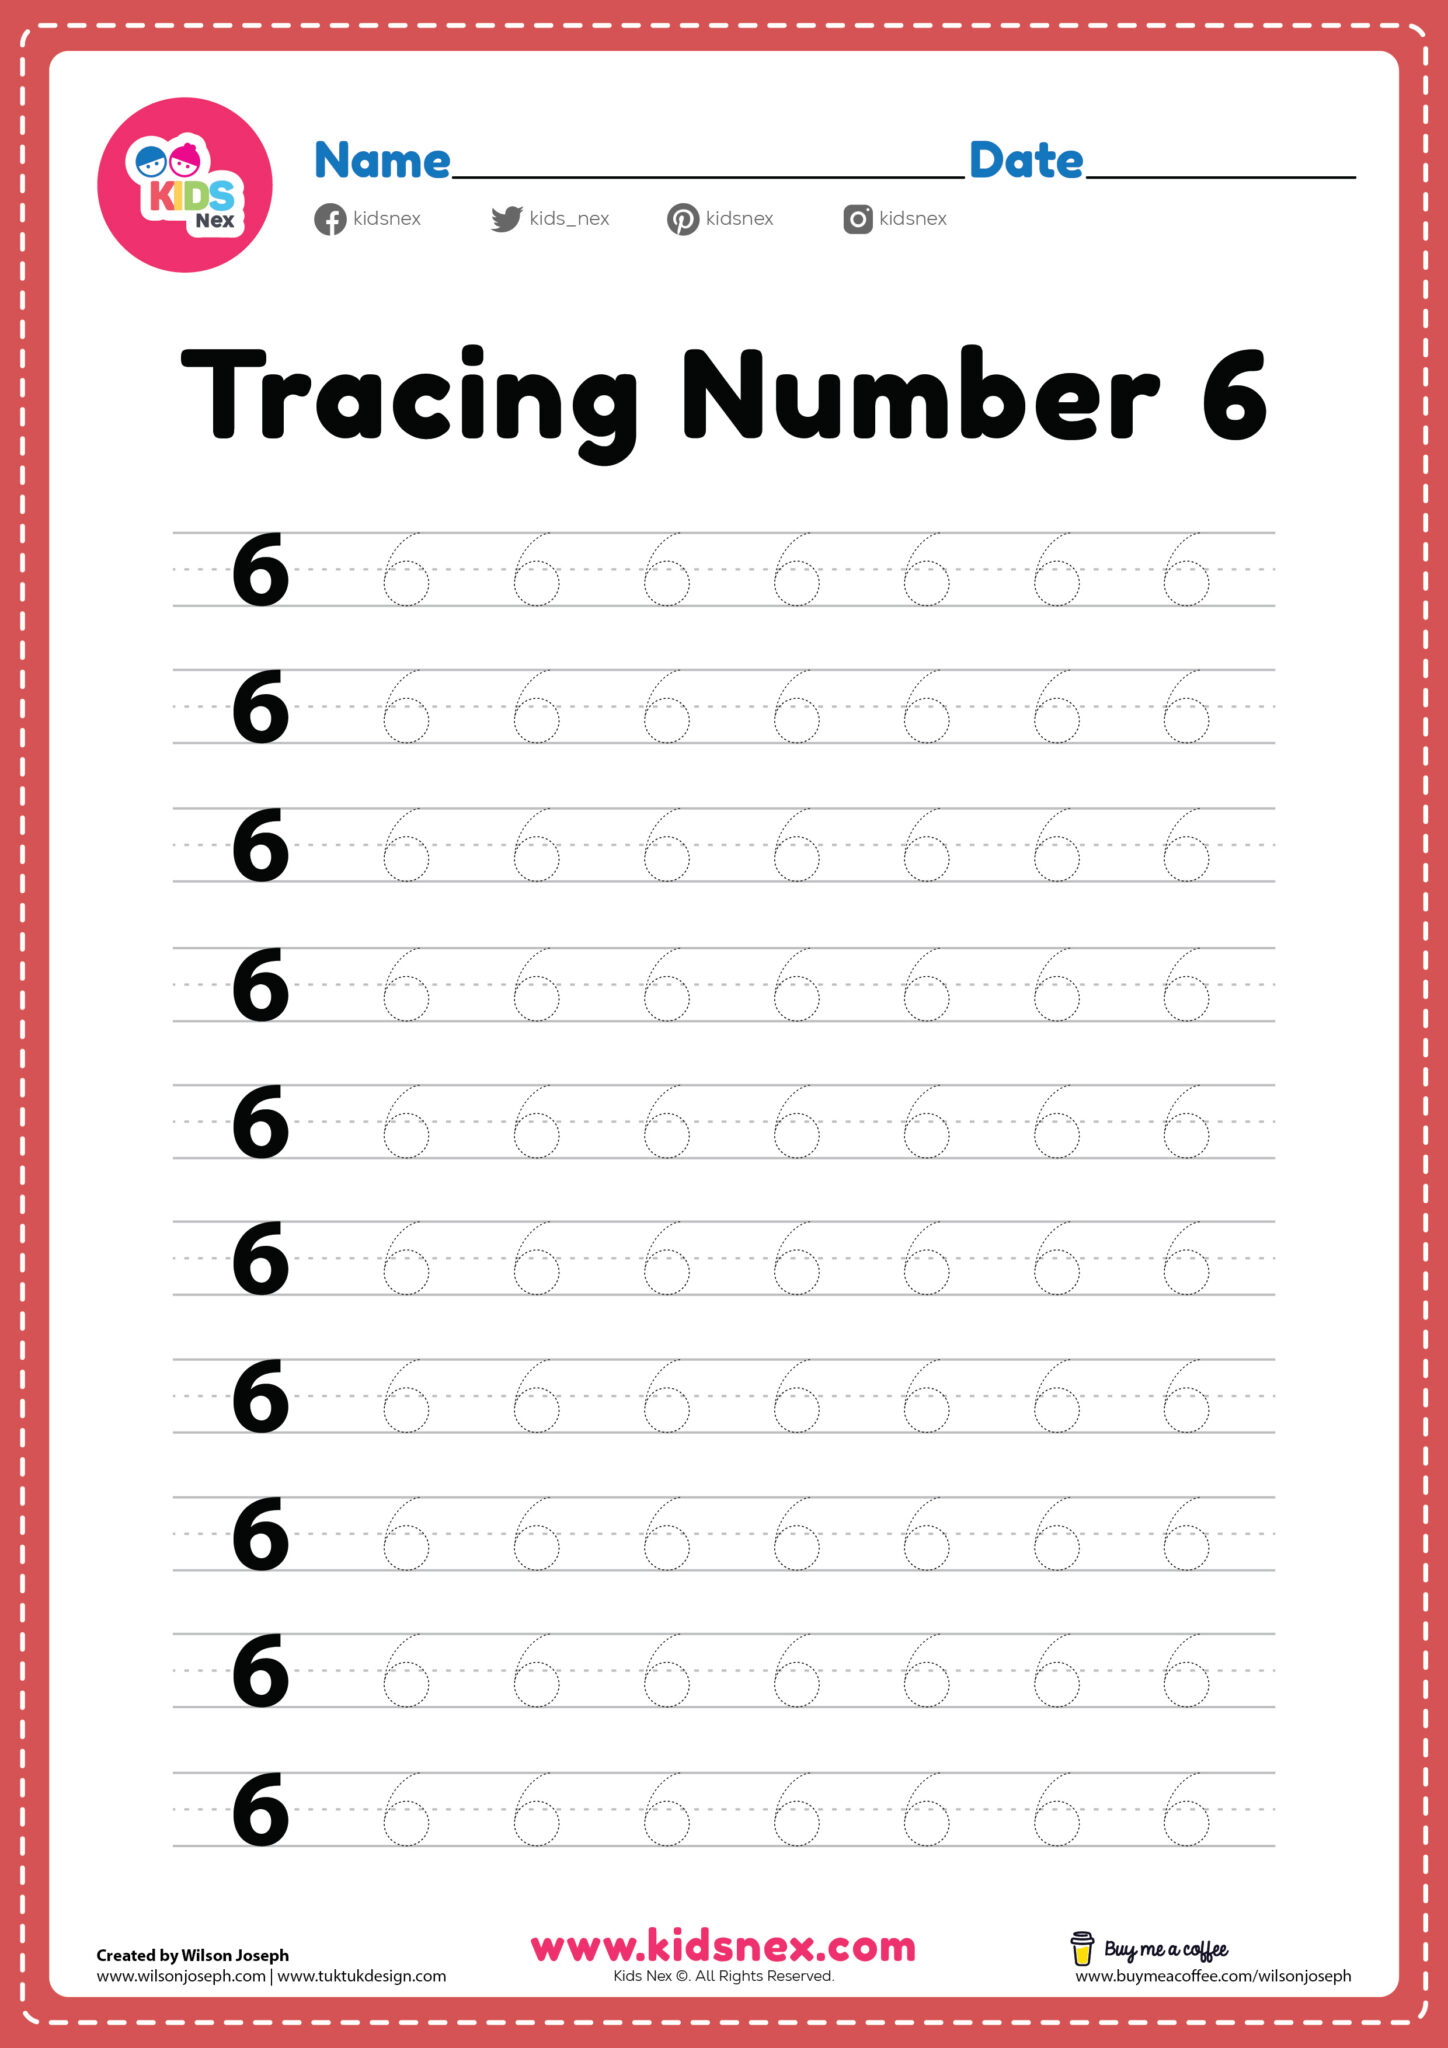 number-6-handwriting-practice-worksheet-free-printable-puzzle-games